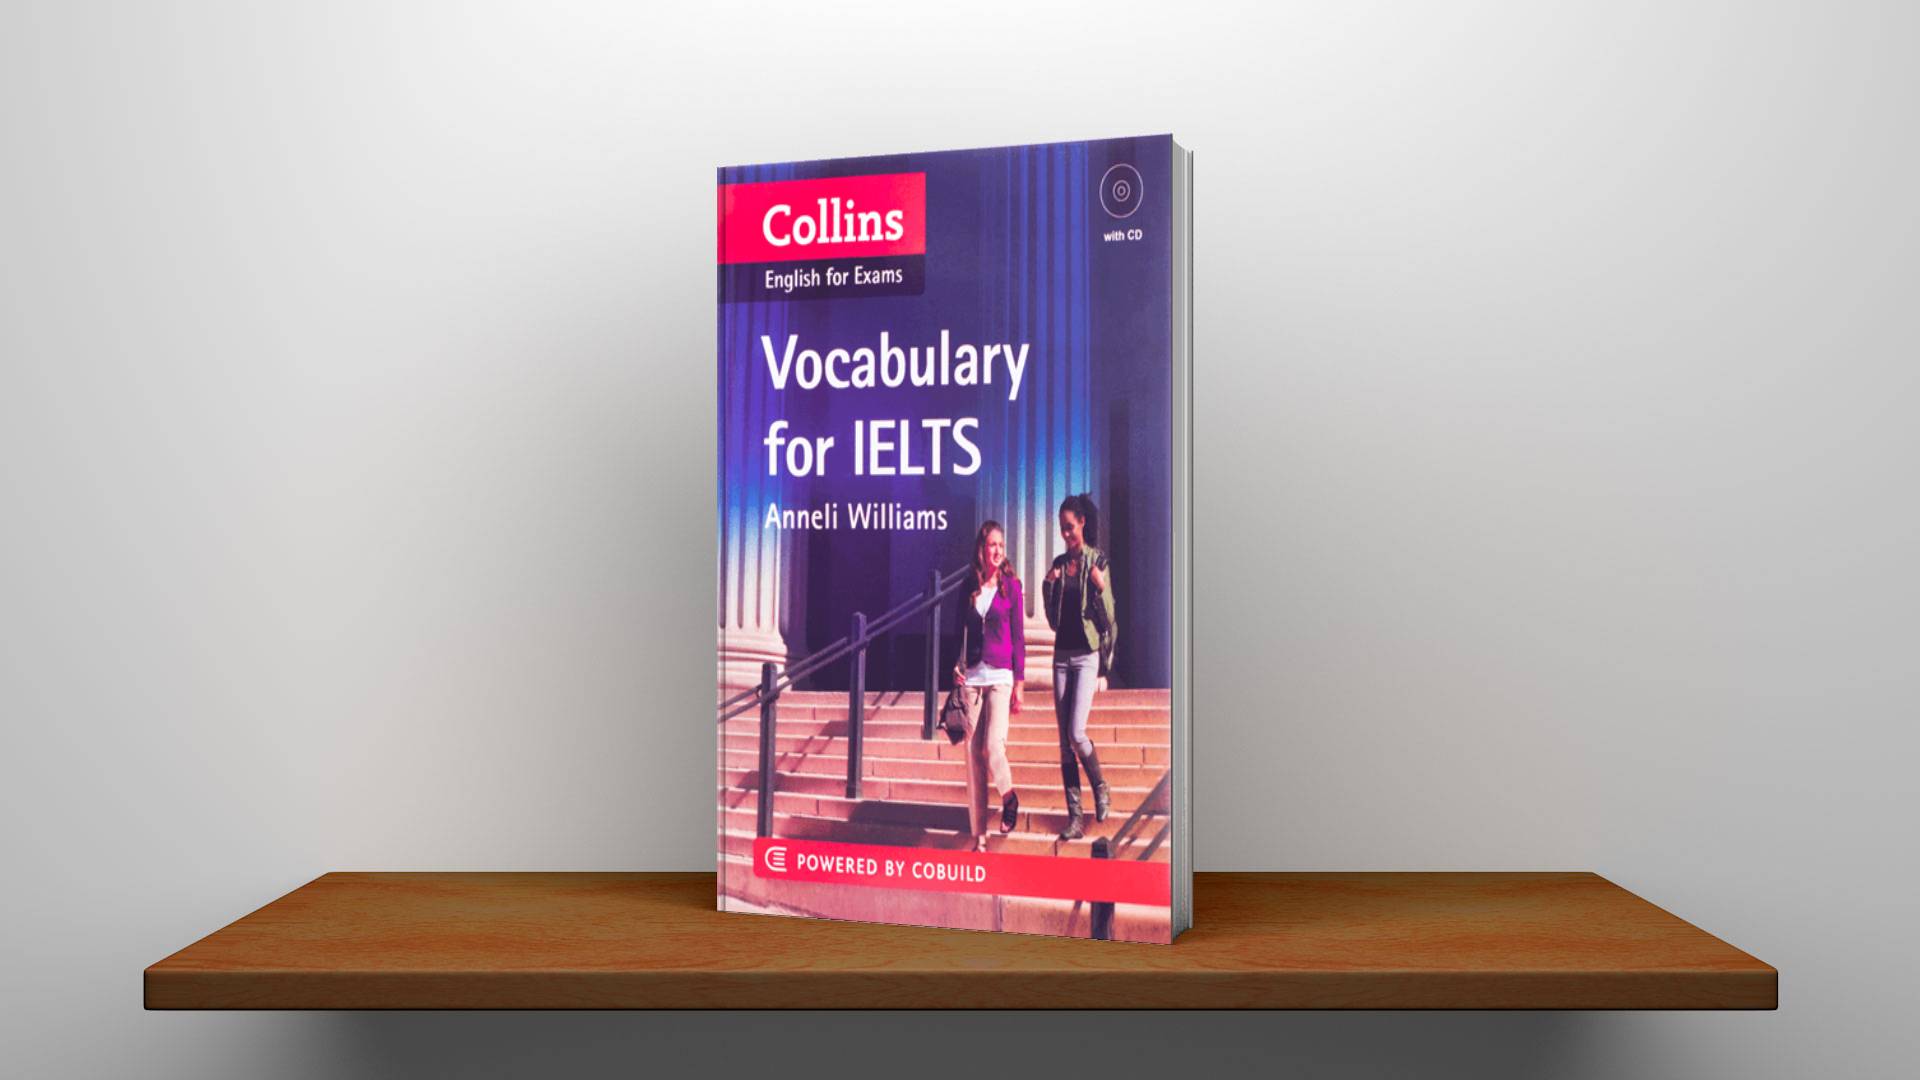 خرید کتاب زبان | کتاب زبان آیلتس | Collins english for exams Vocabulary for Ielts | کالینز وکبیولری برای آیلتس